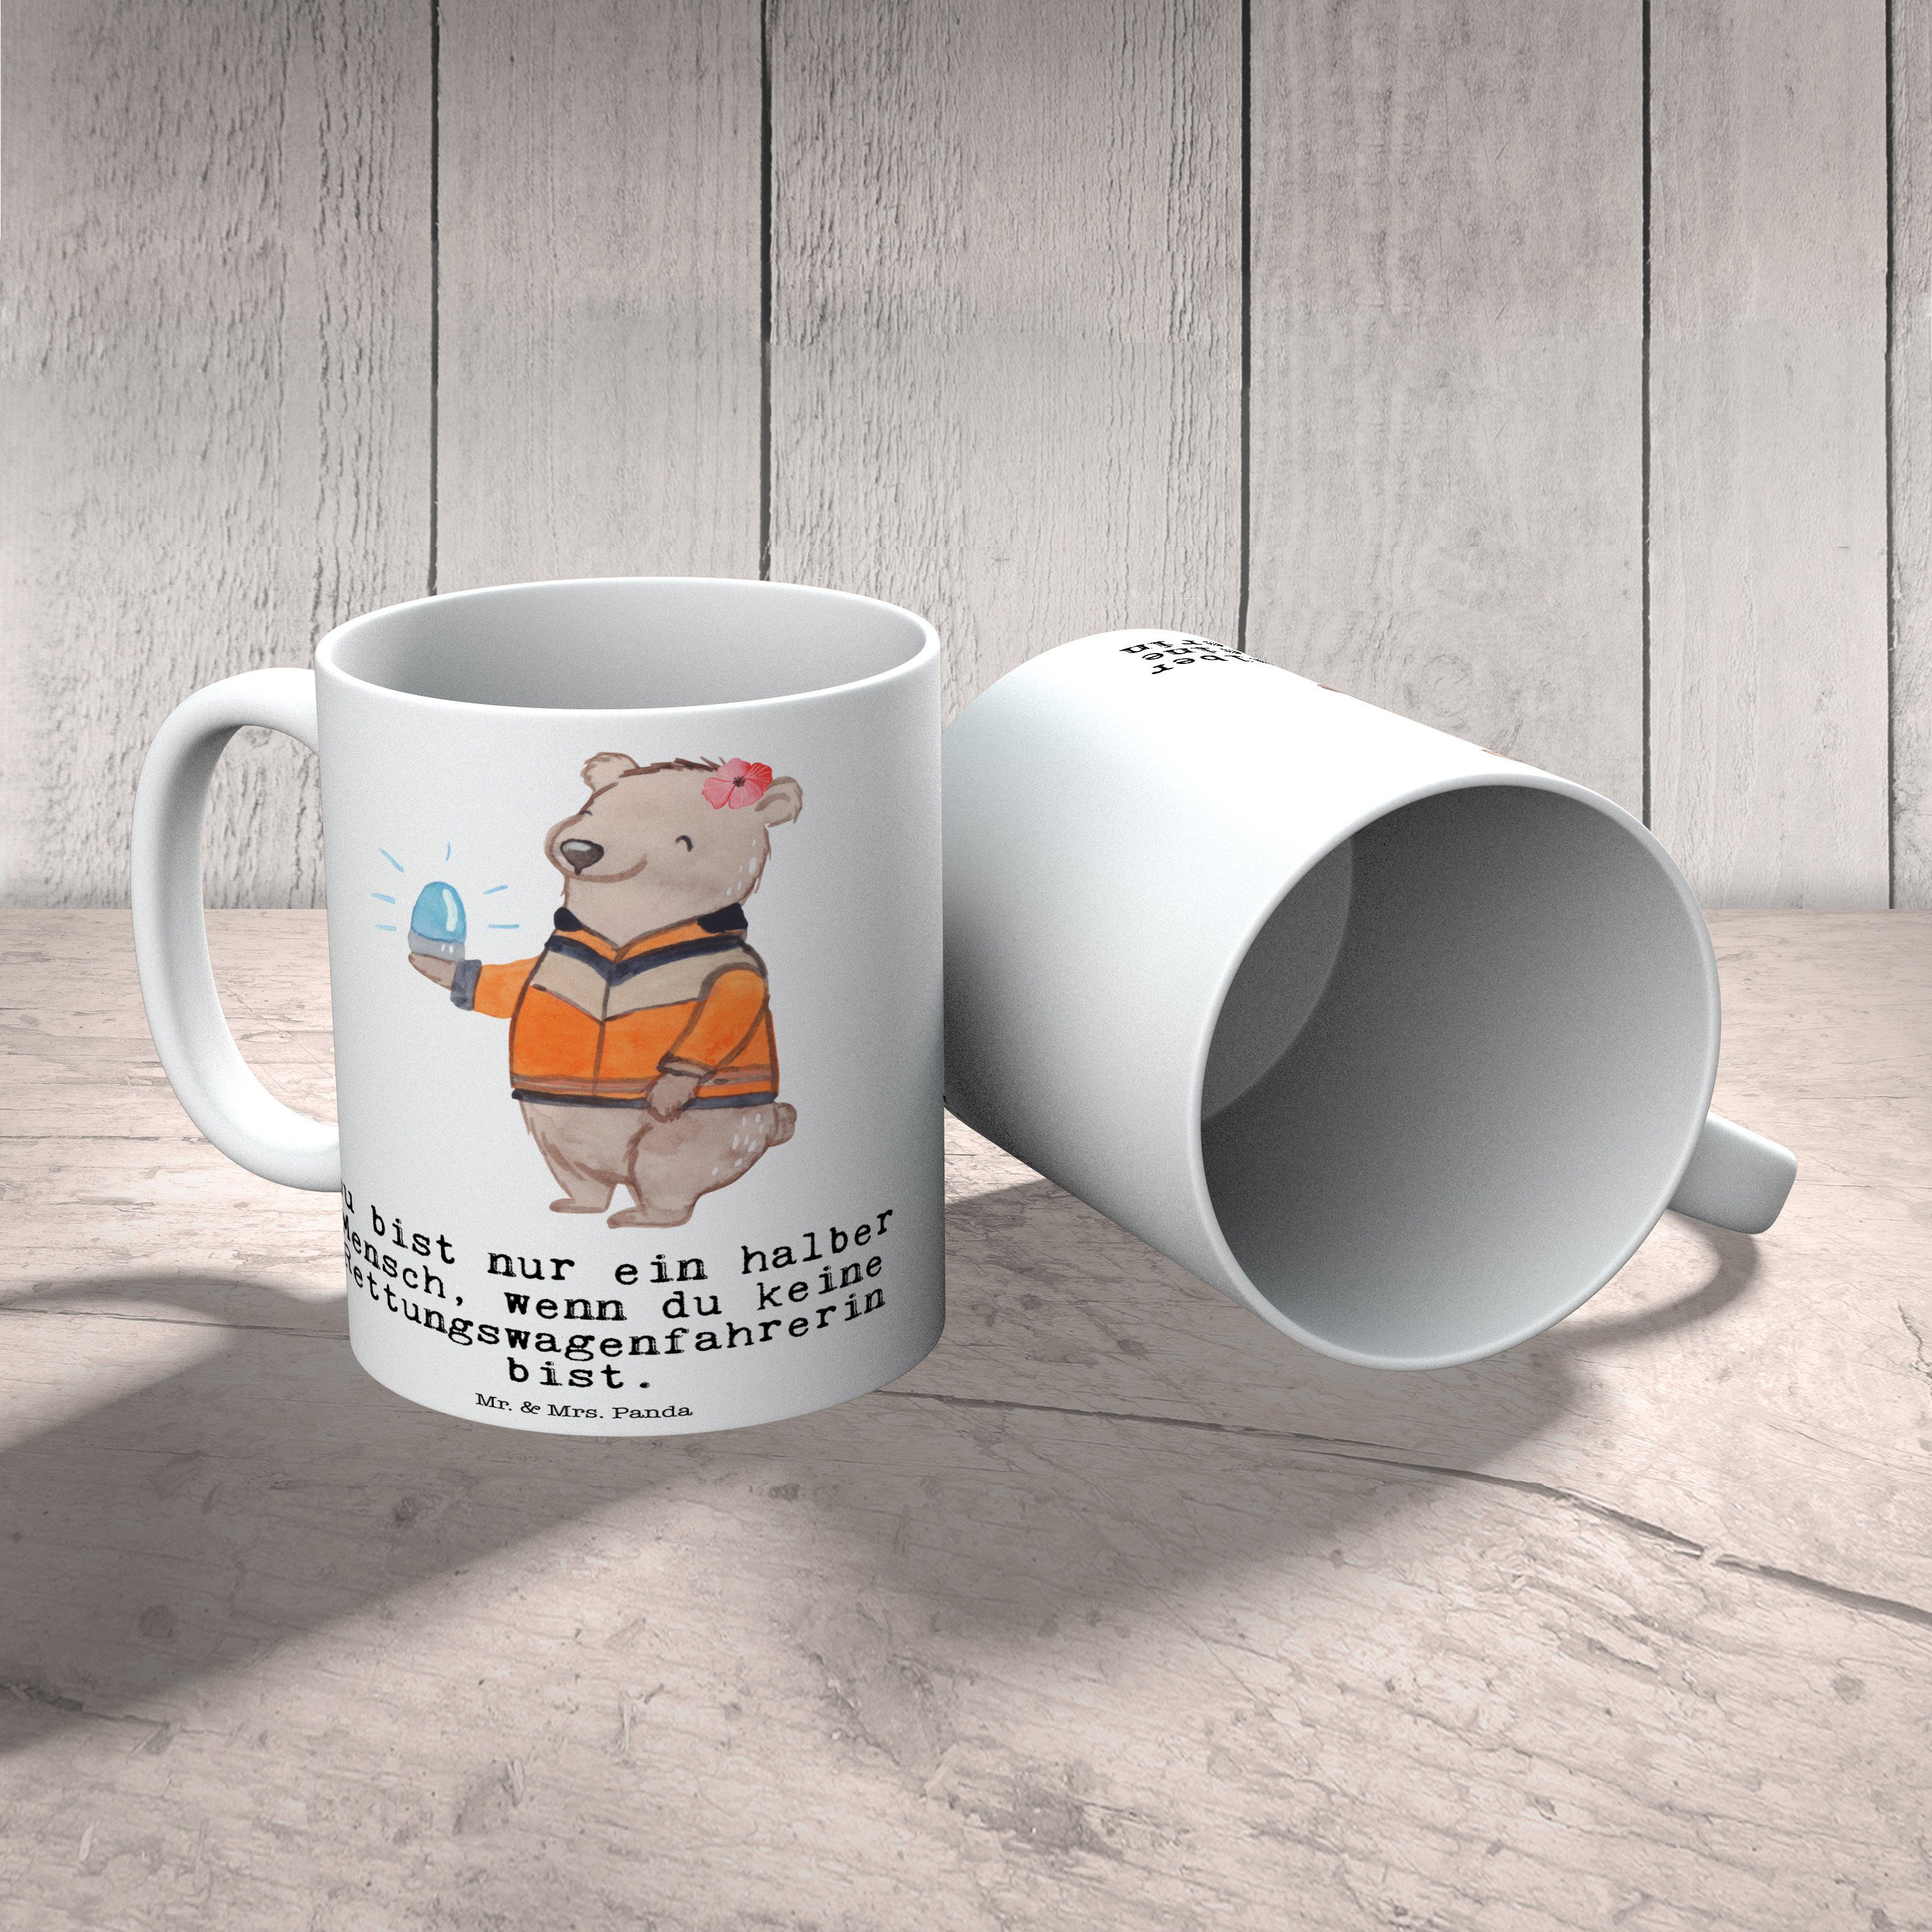 T, - Geschenk, Büro Rettungswagenfahrerin Tasse Mrs. - & Panda Keramik Kaffeetasse, mit Mr. Herz Weiß